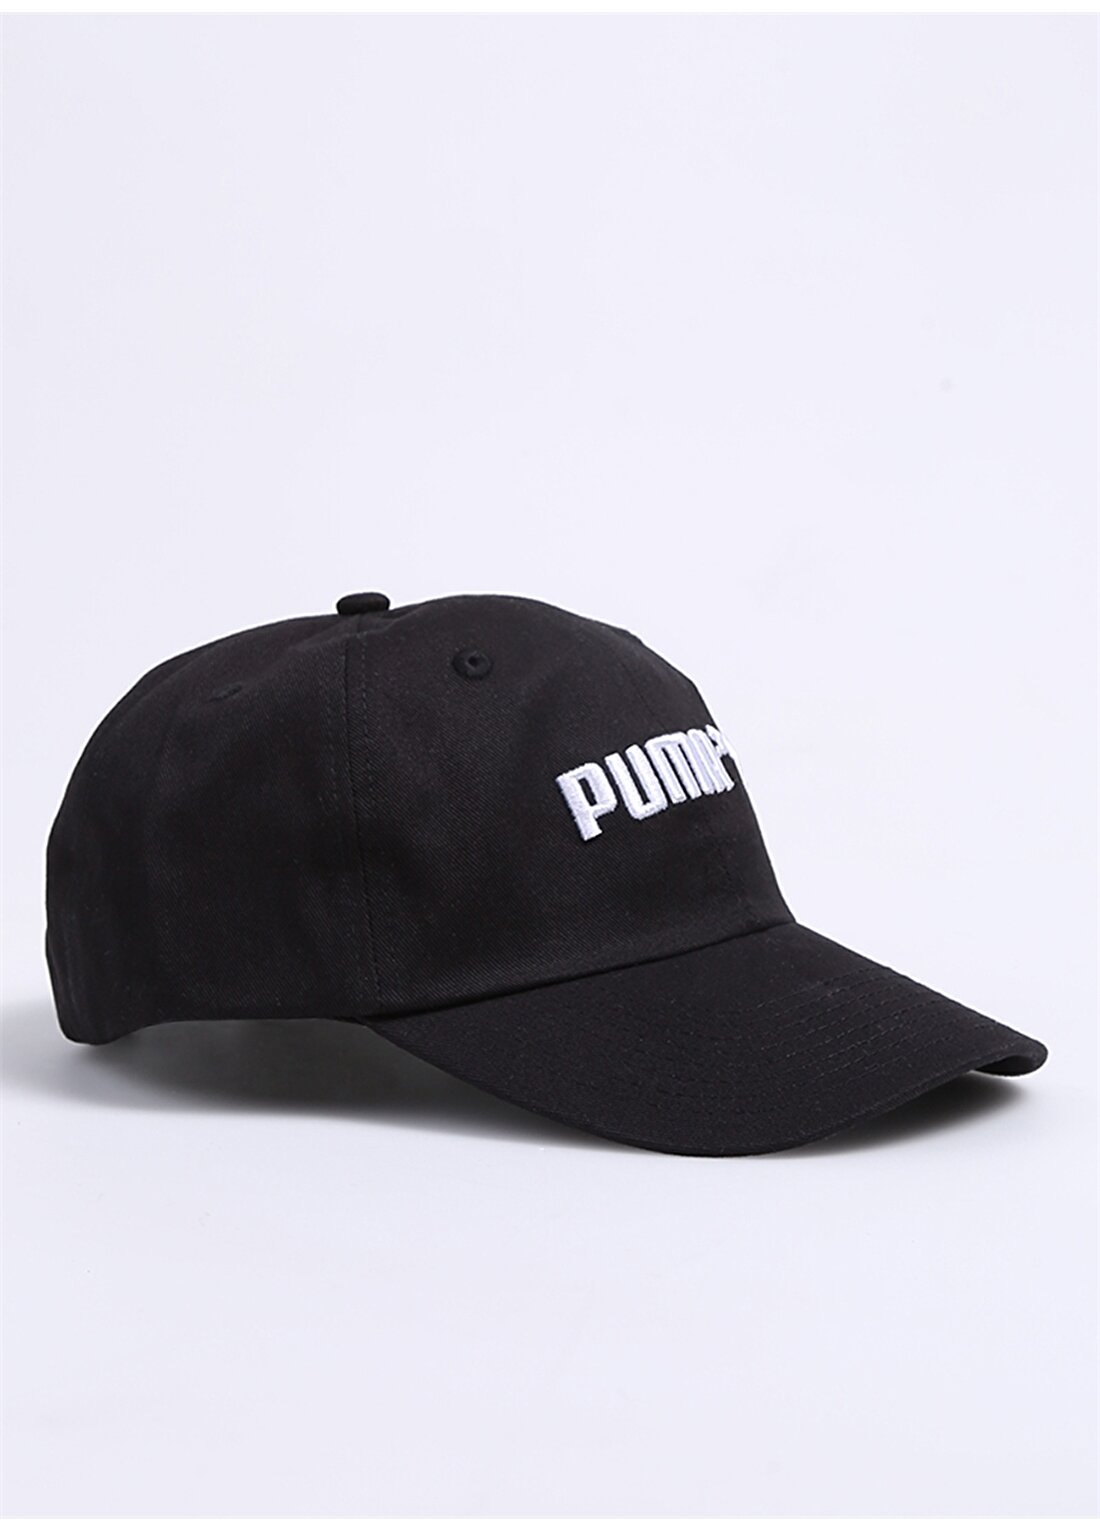 Puma 02288501 Ess Cap No. 2 Siyah Erkek Şapka